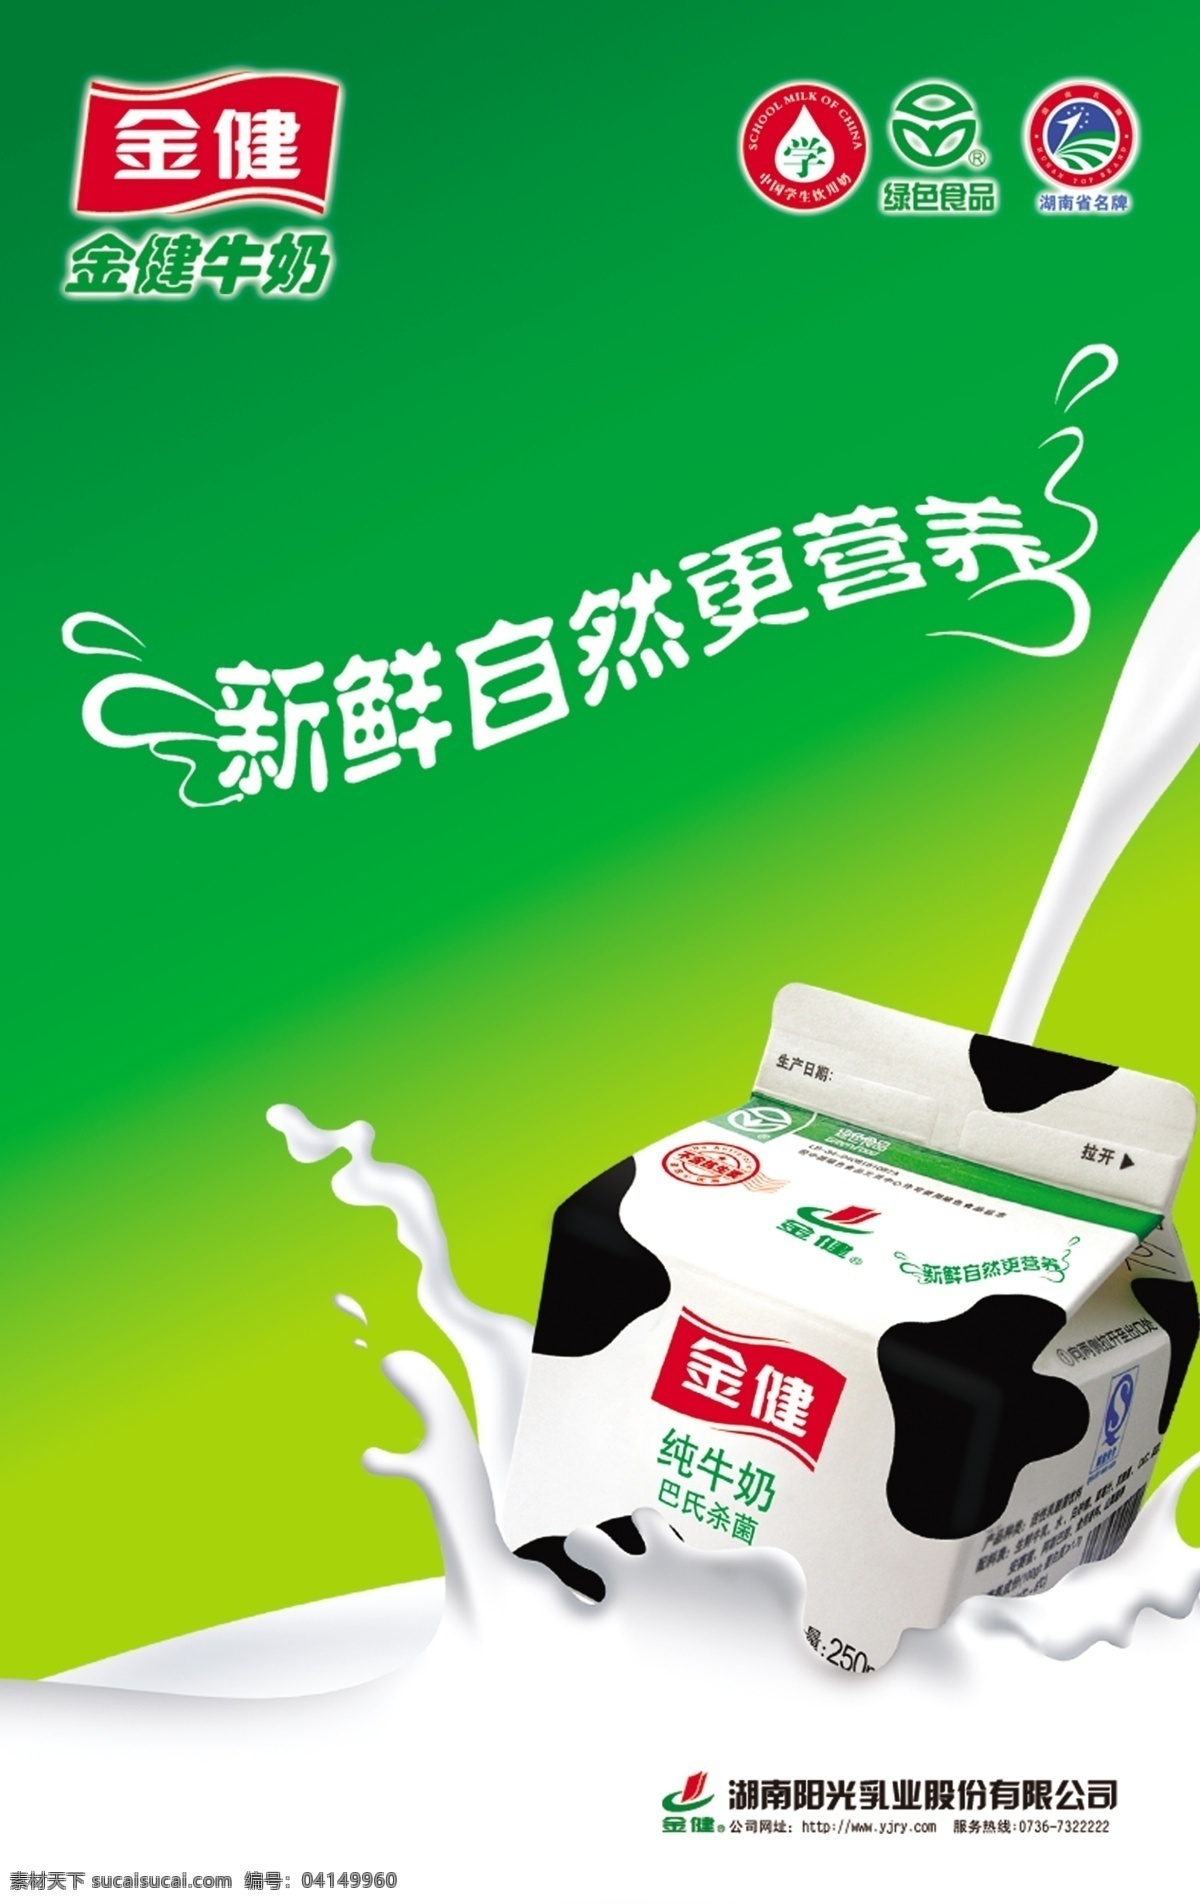 金健 牛奶 模板下载 金健牛奶 动感牛奶 新鲜 自然 健康 广告设计模板 国内广告设计 源文件库 绿色